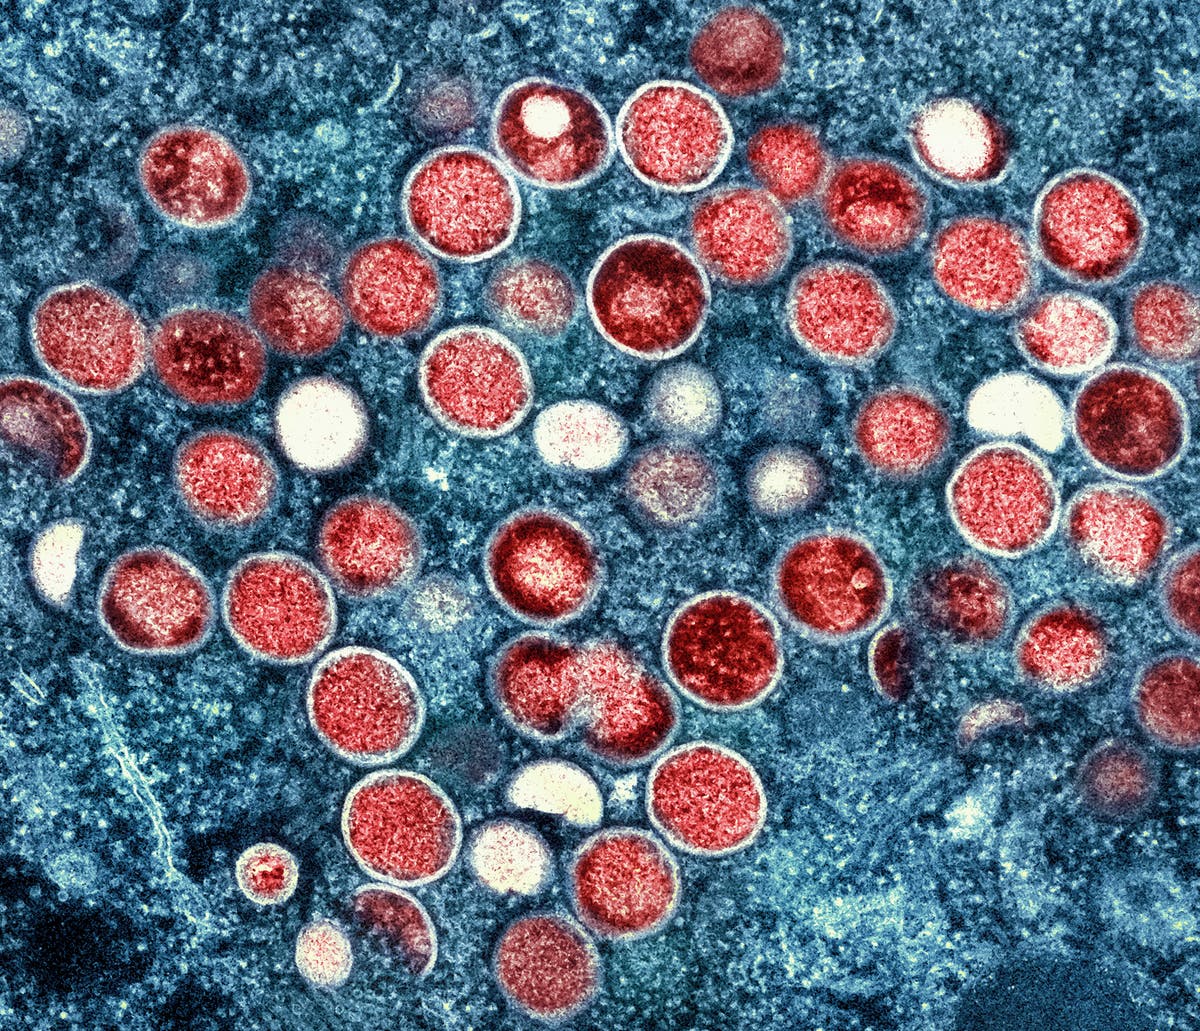 Verenigde Koninkryk: 'Early signs' that monkeypox outbreak may be peaking